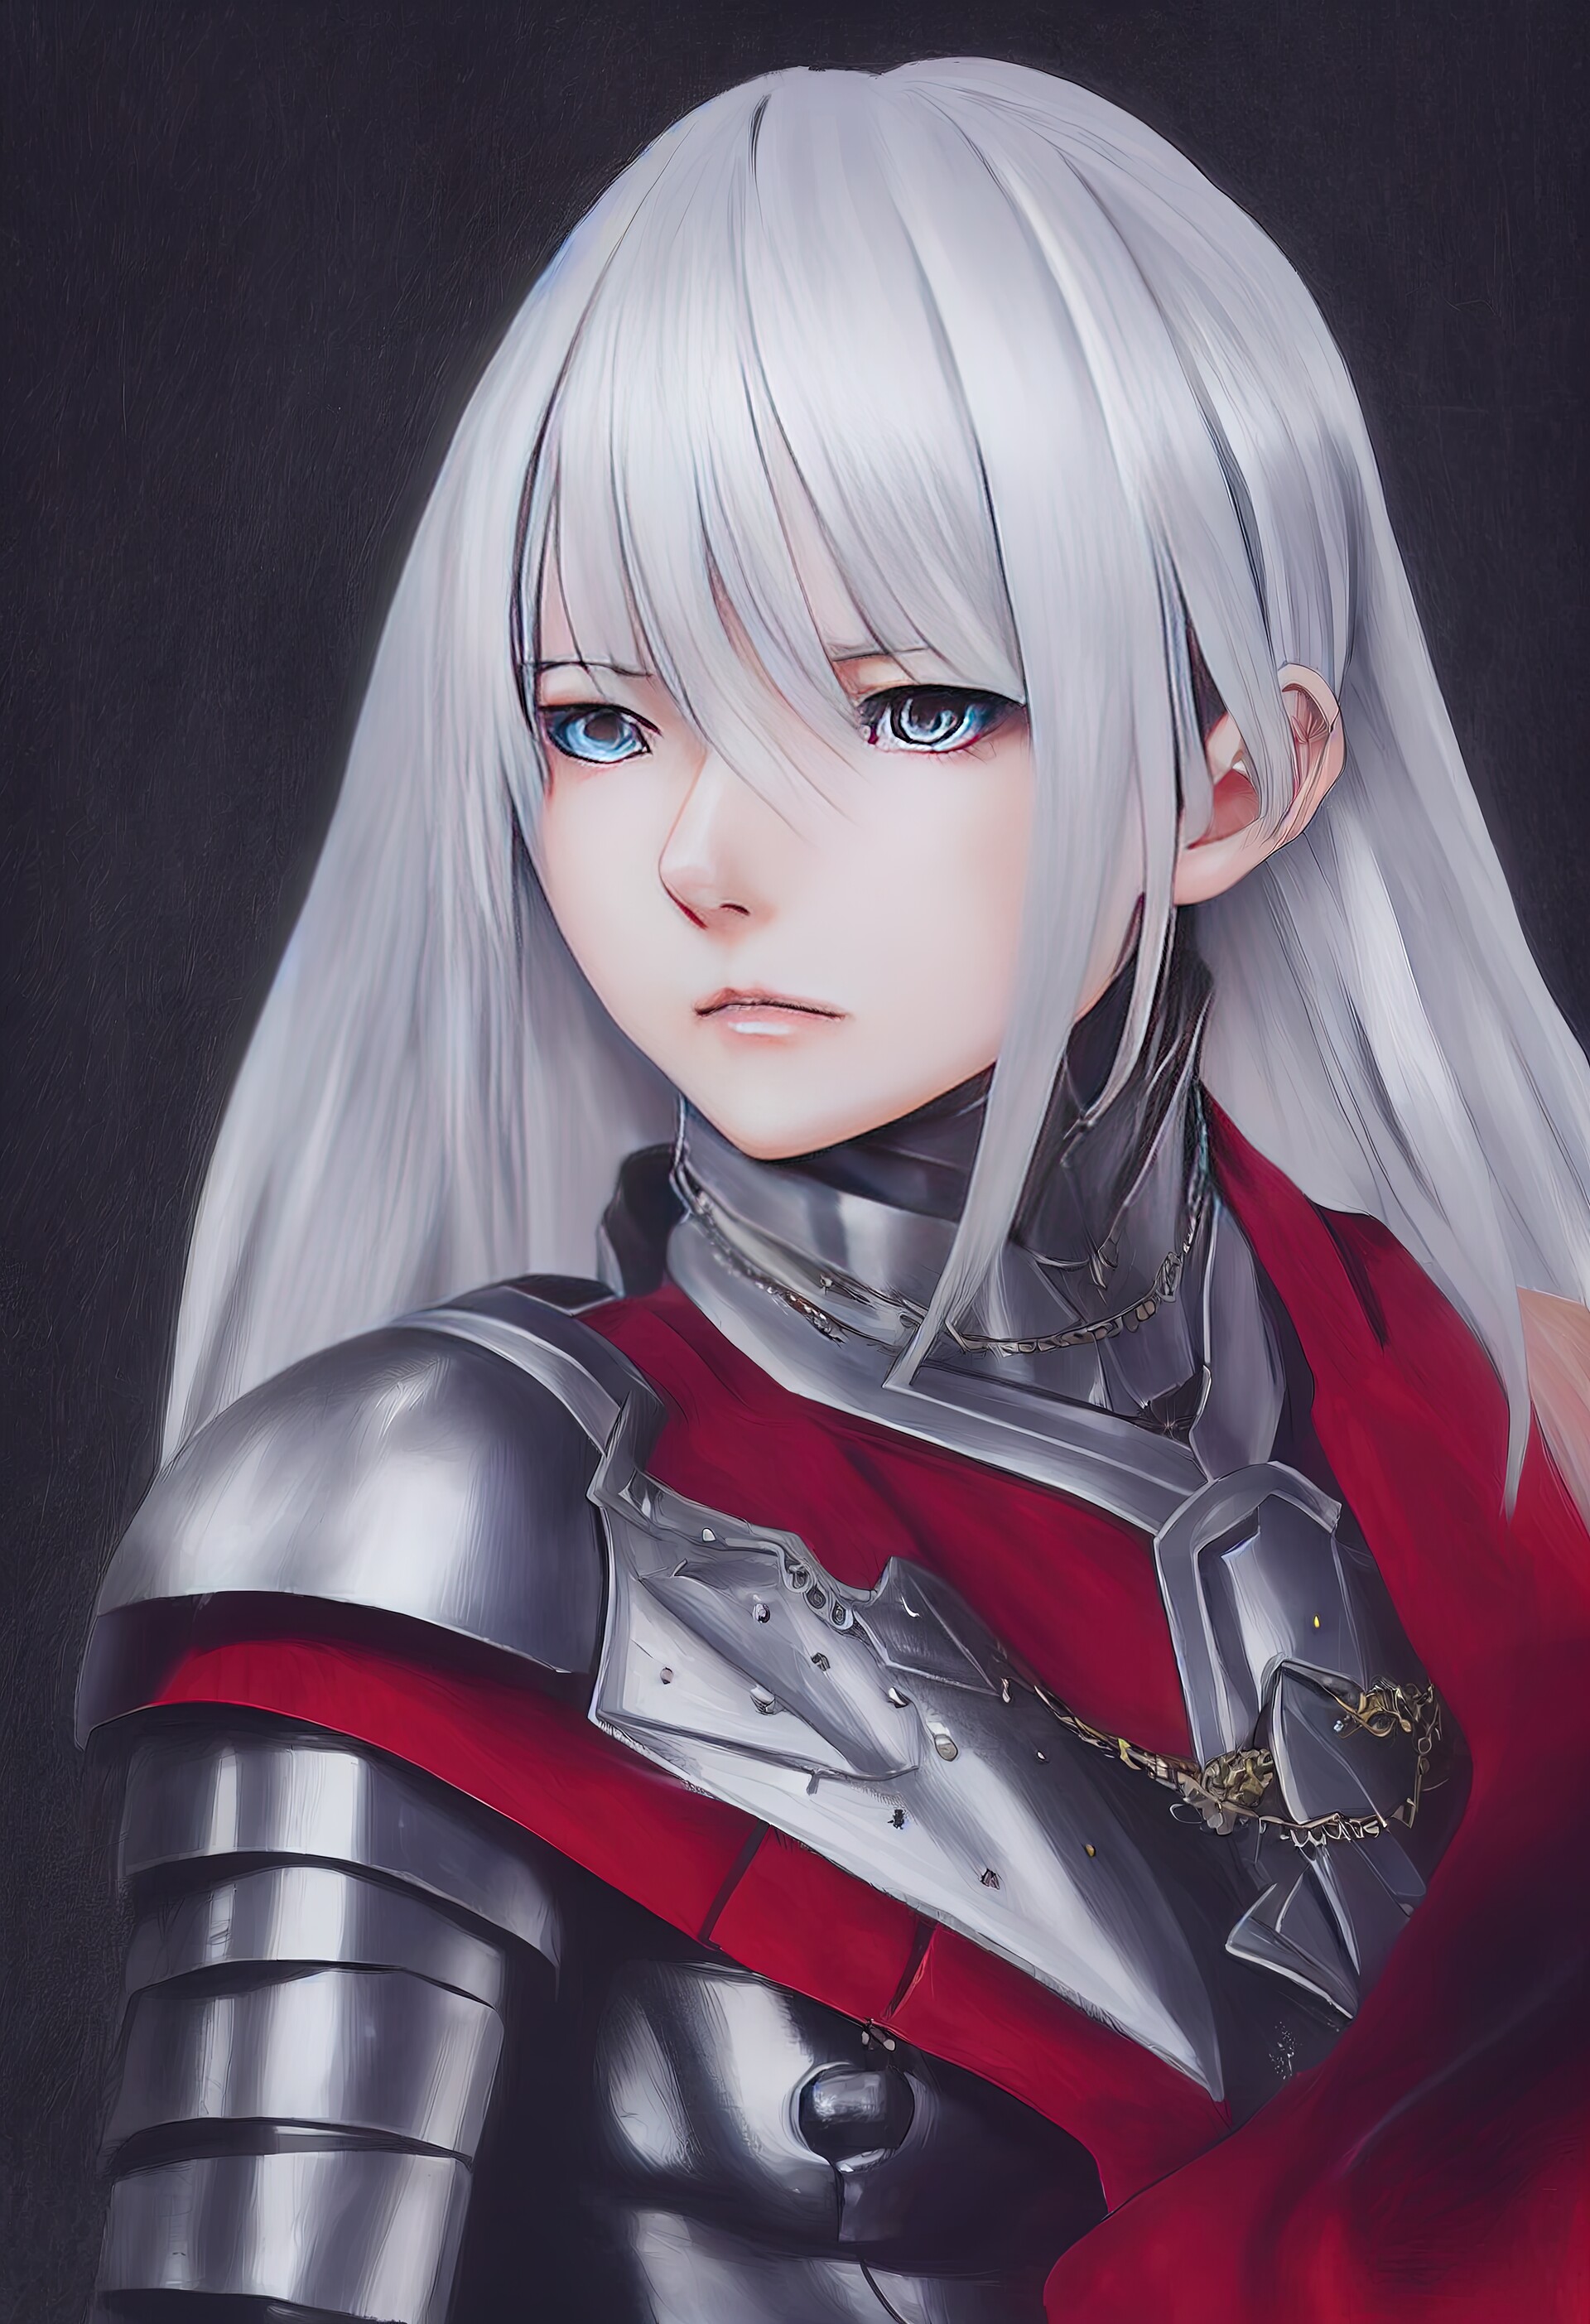 ArtStation - White haired Female knight Portrait